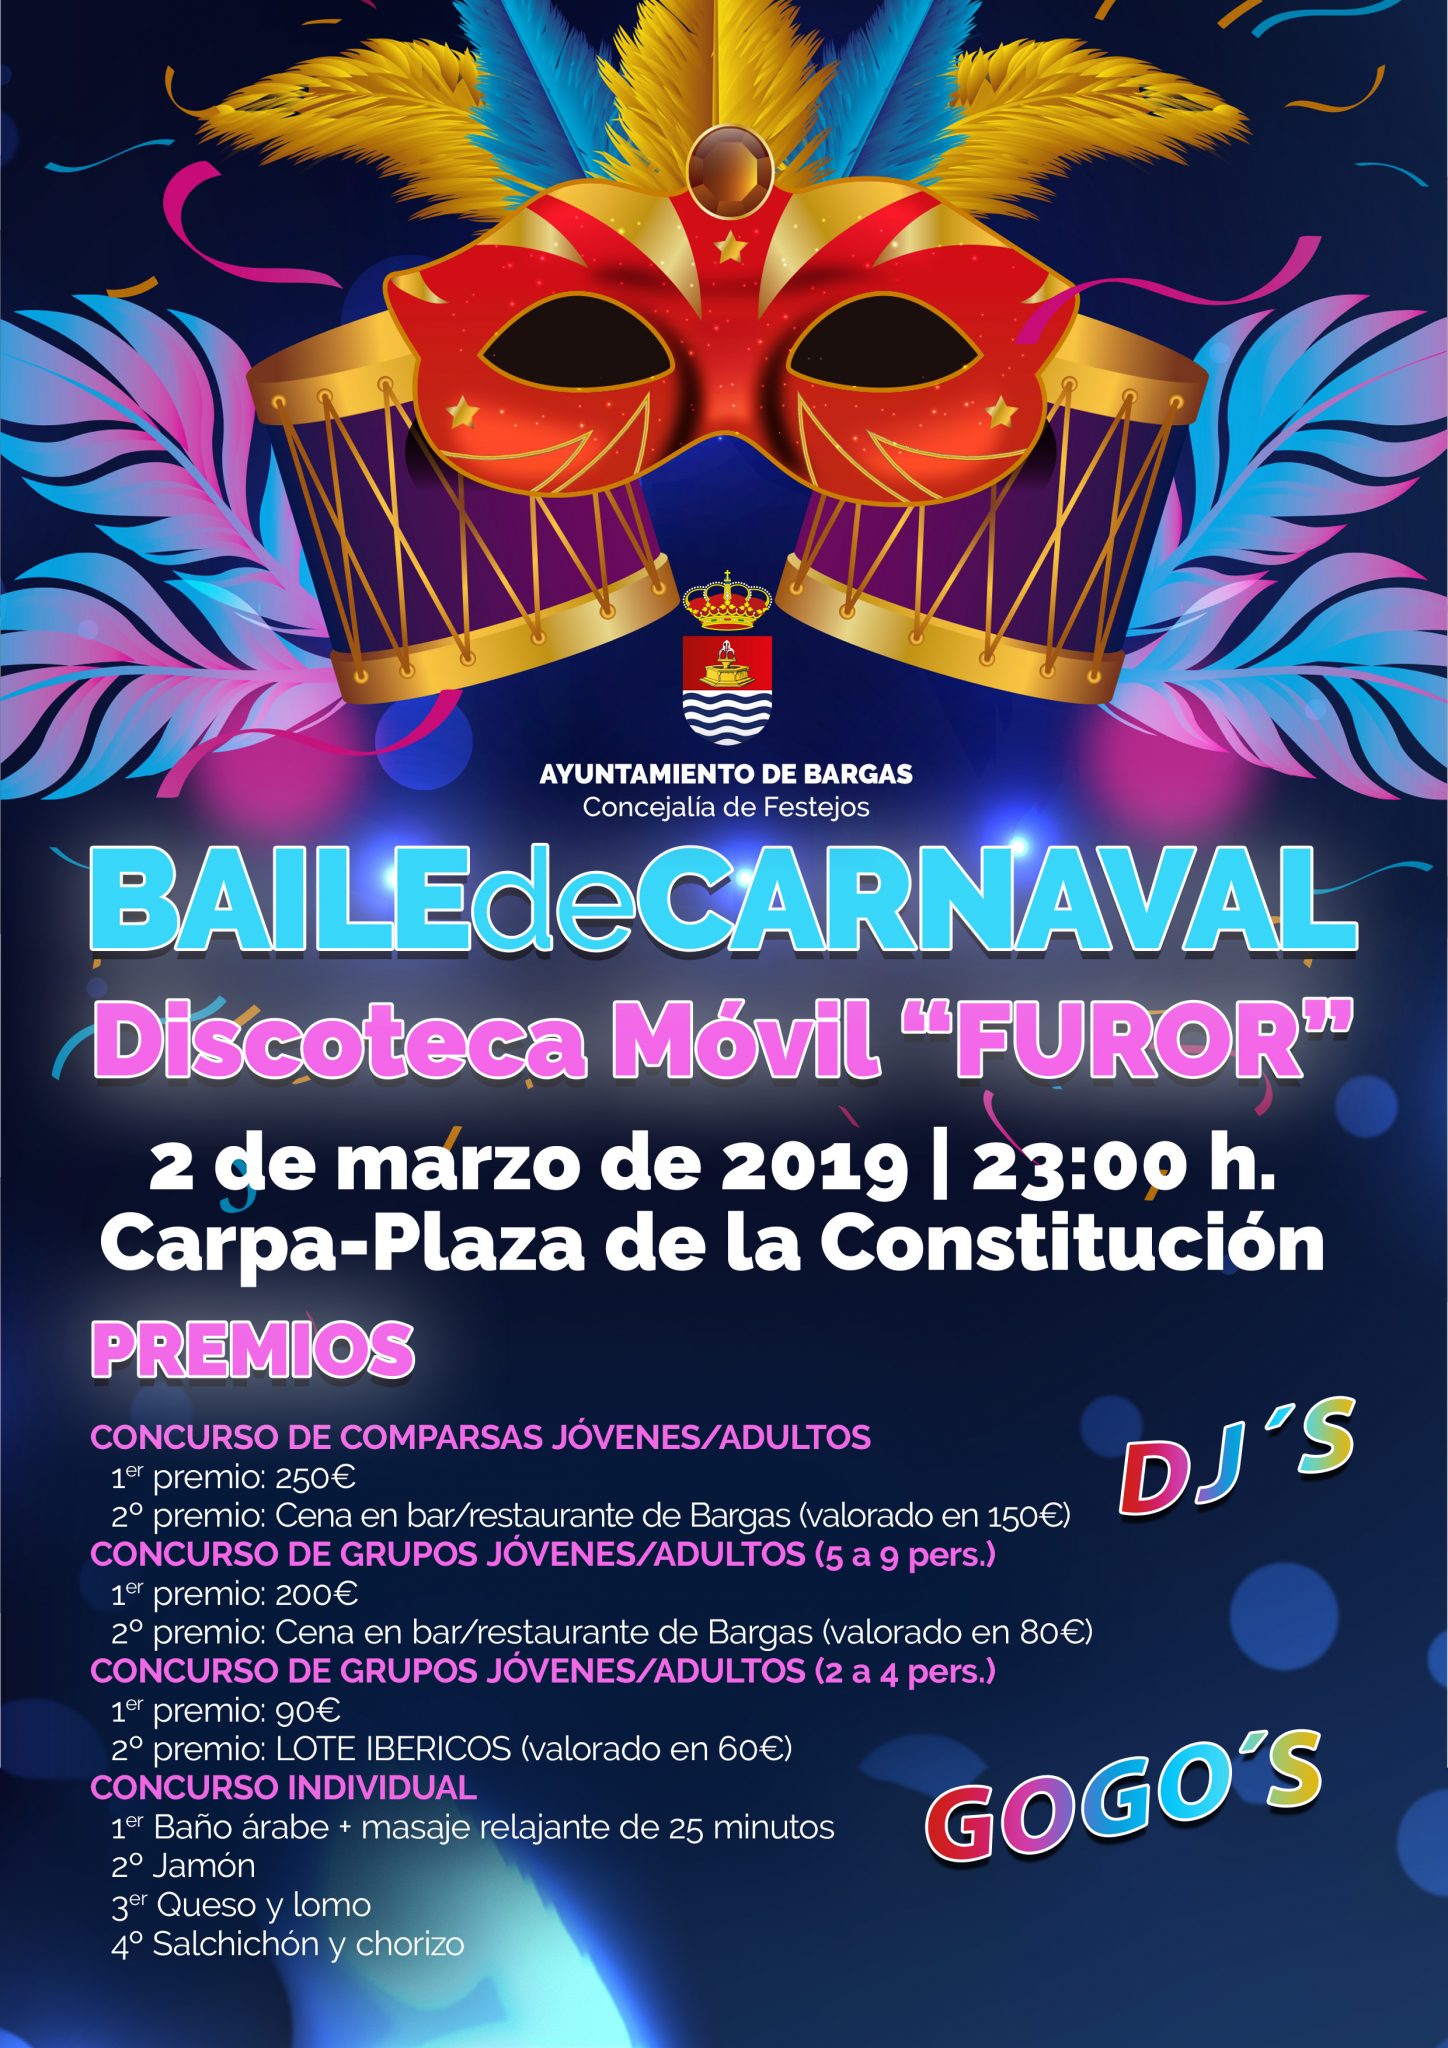 Baile de Carnaval 2019